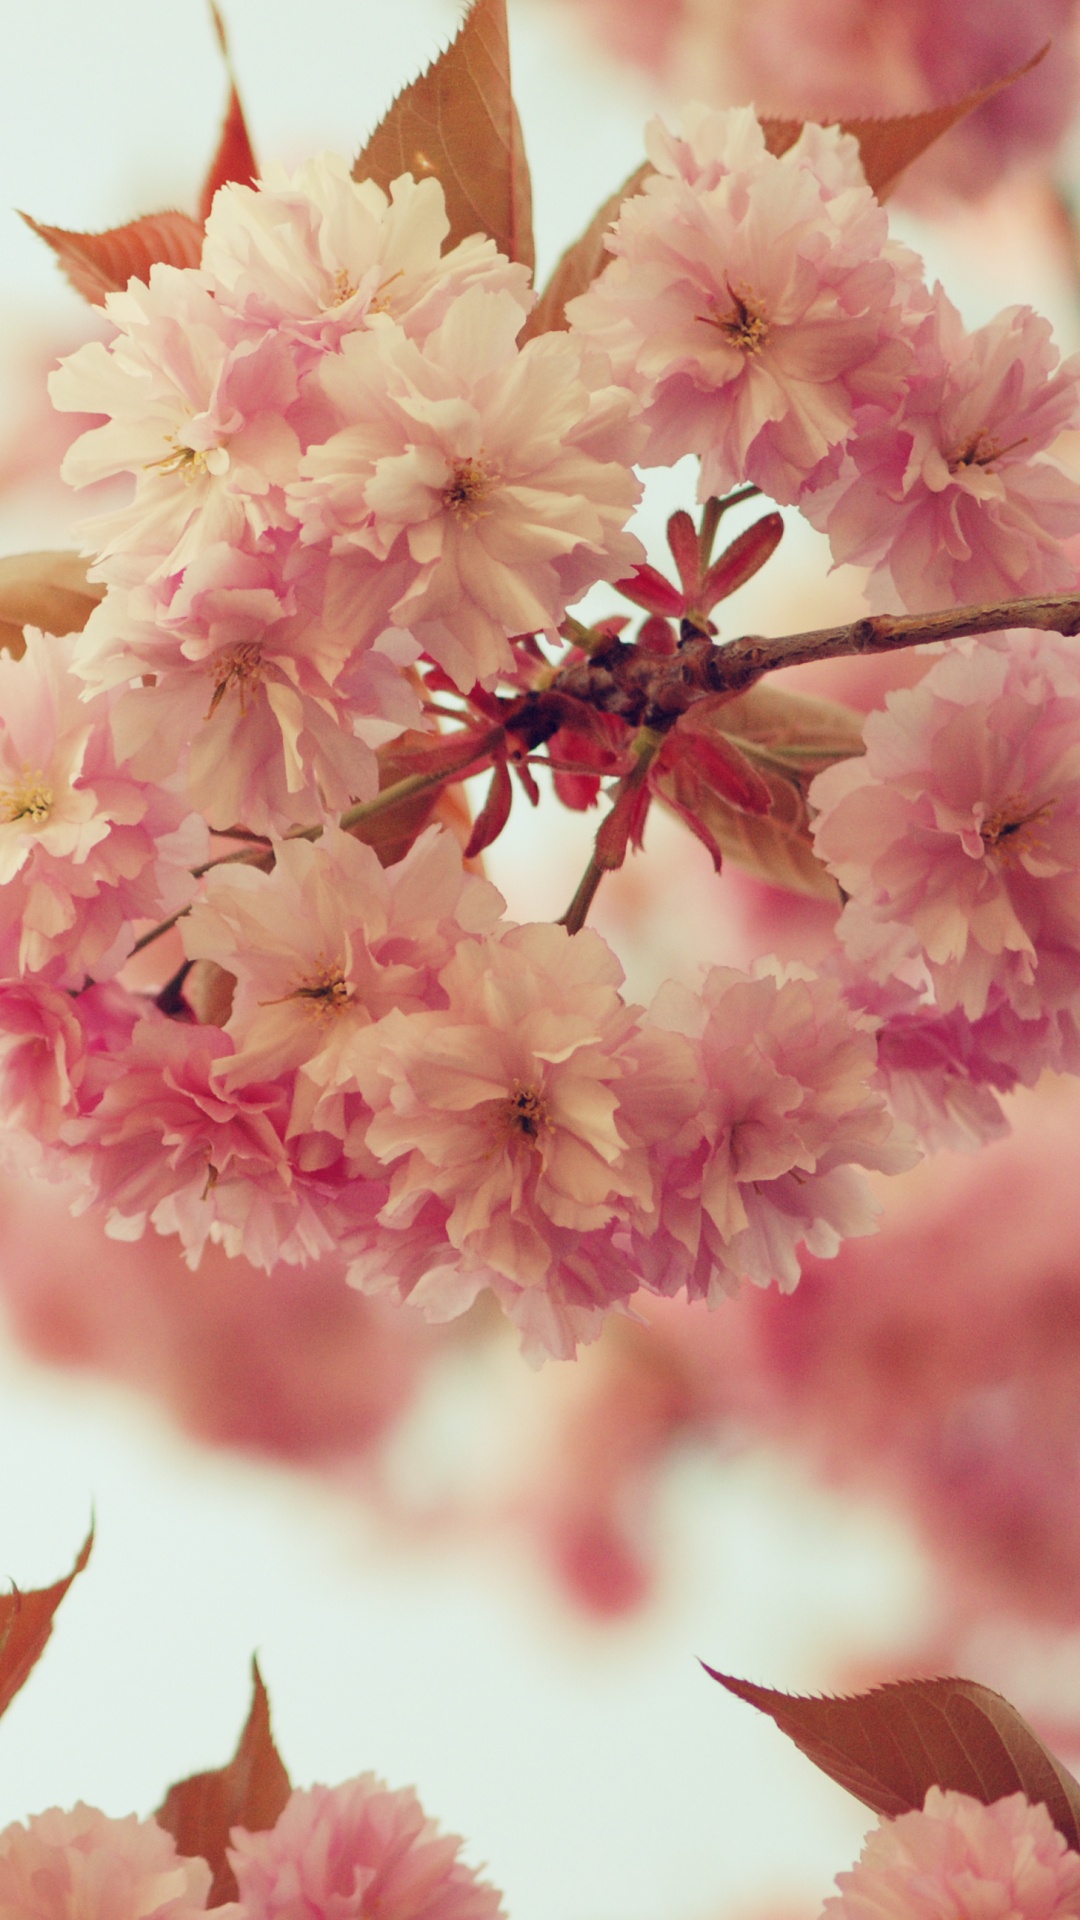 粉红色, 开花, 弹簧, 樱花, 梅梅 壁纸 1080x1920 允许